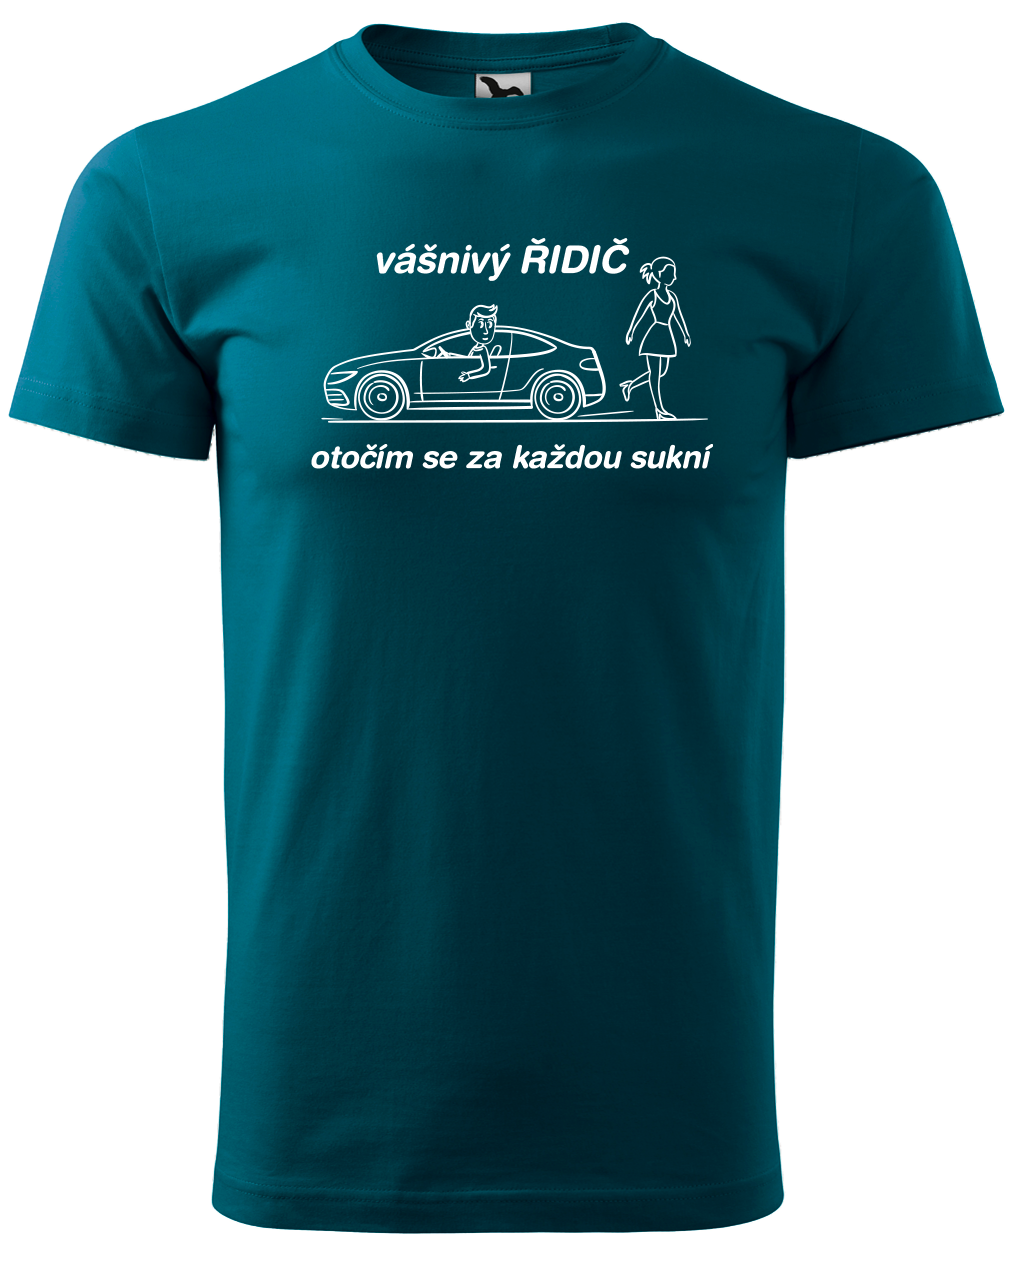 Vtipné tričko pro řidiče - Vášnivý řidič Velikost: S, Barva: Petrolejová (93)